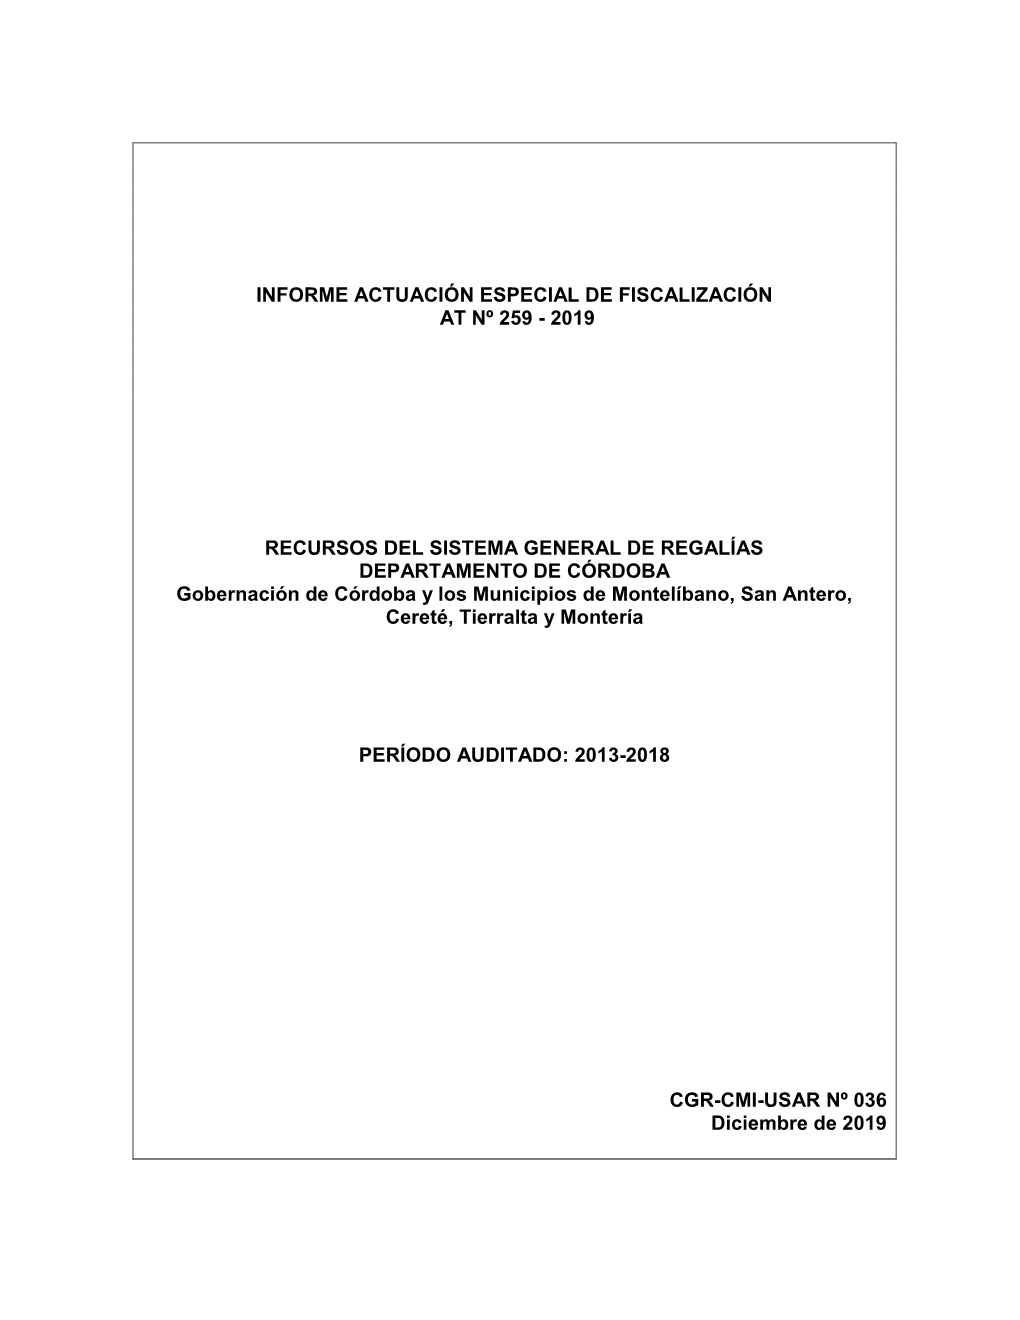 Informe Actuación Especial De Fiscalización at Nº 259 - 2019